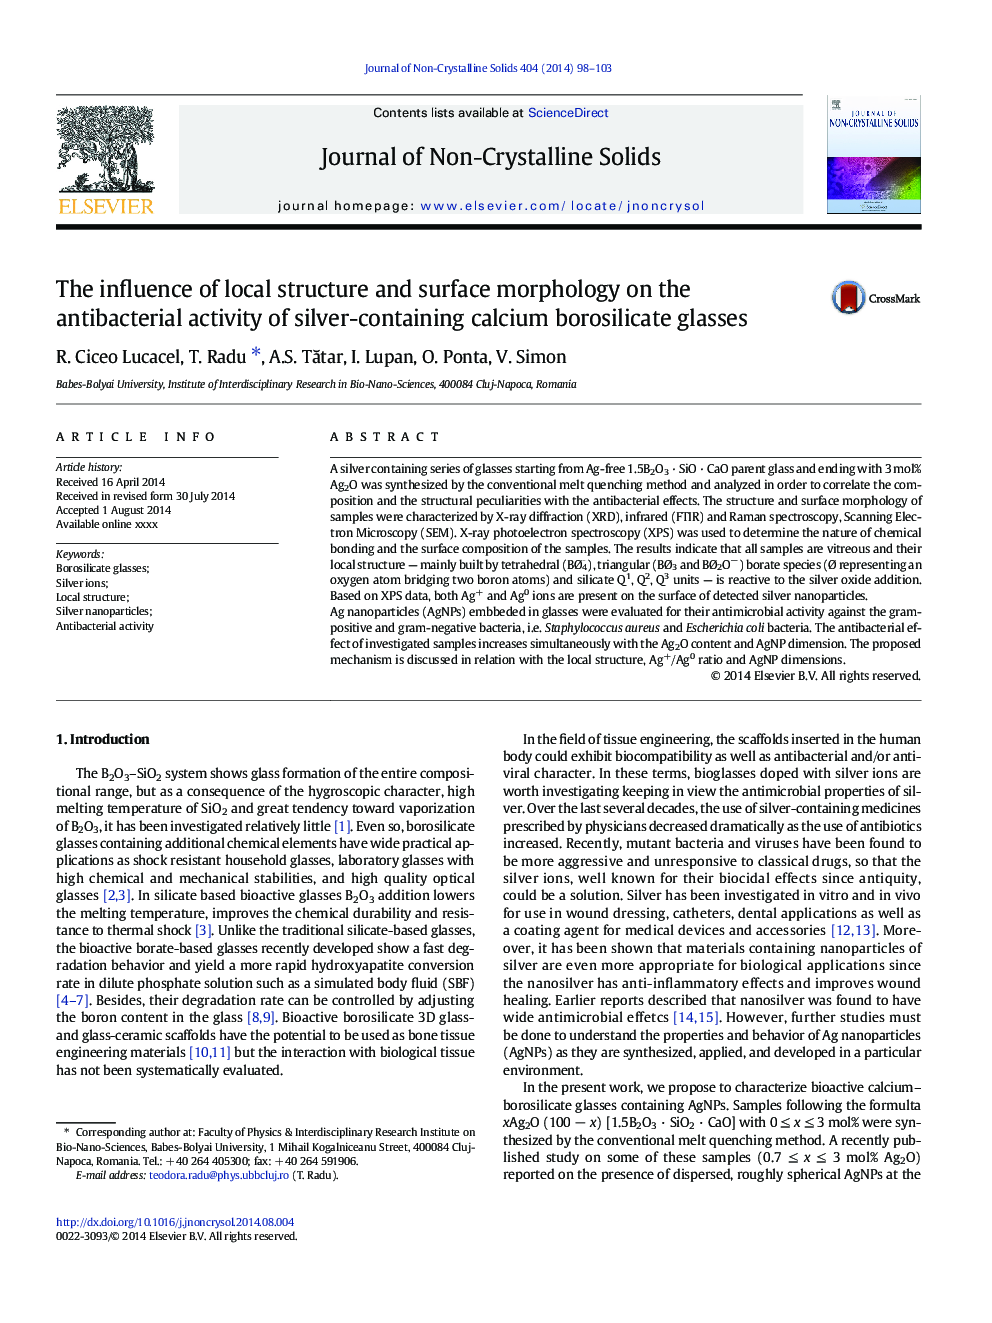 تأثیر ساختار محلی و مورفولوژی سطح بر روی فعالیت ضد باکتری لیفت بورسیلیکات کلسیم حاوی نقره 